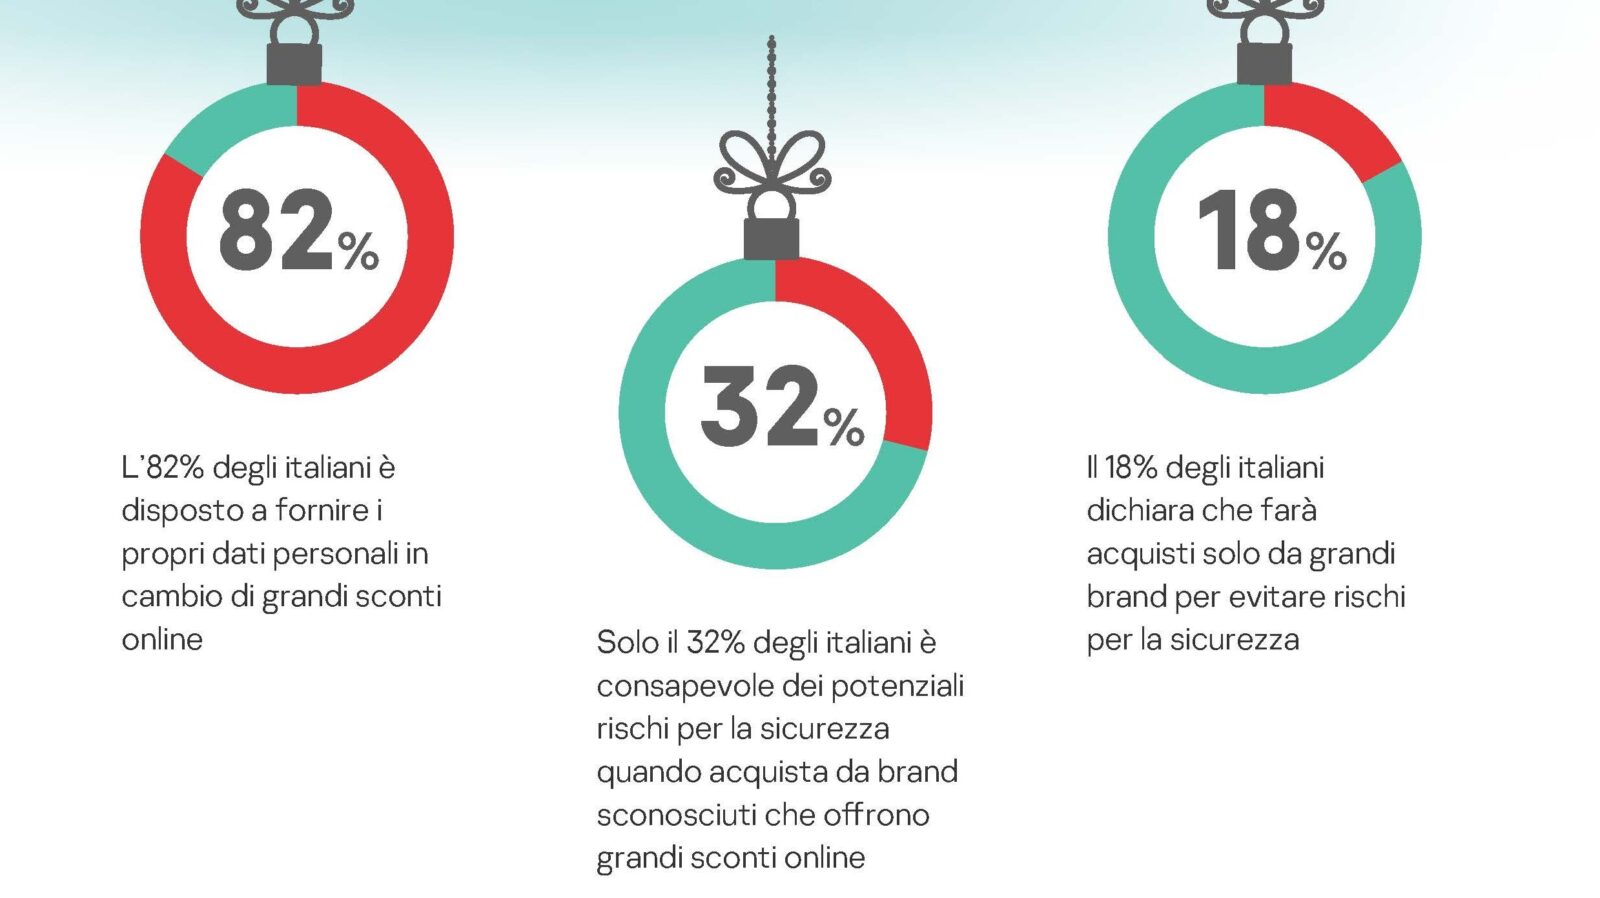 L’82% degli italiani è disposto a condividere i propri dati personali in cambio di sconti online